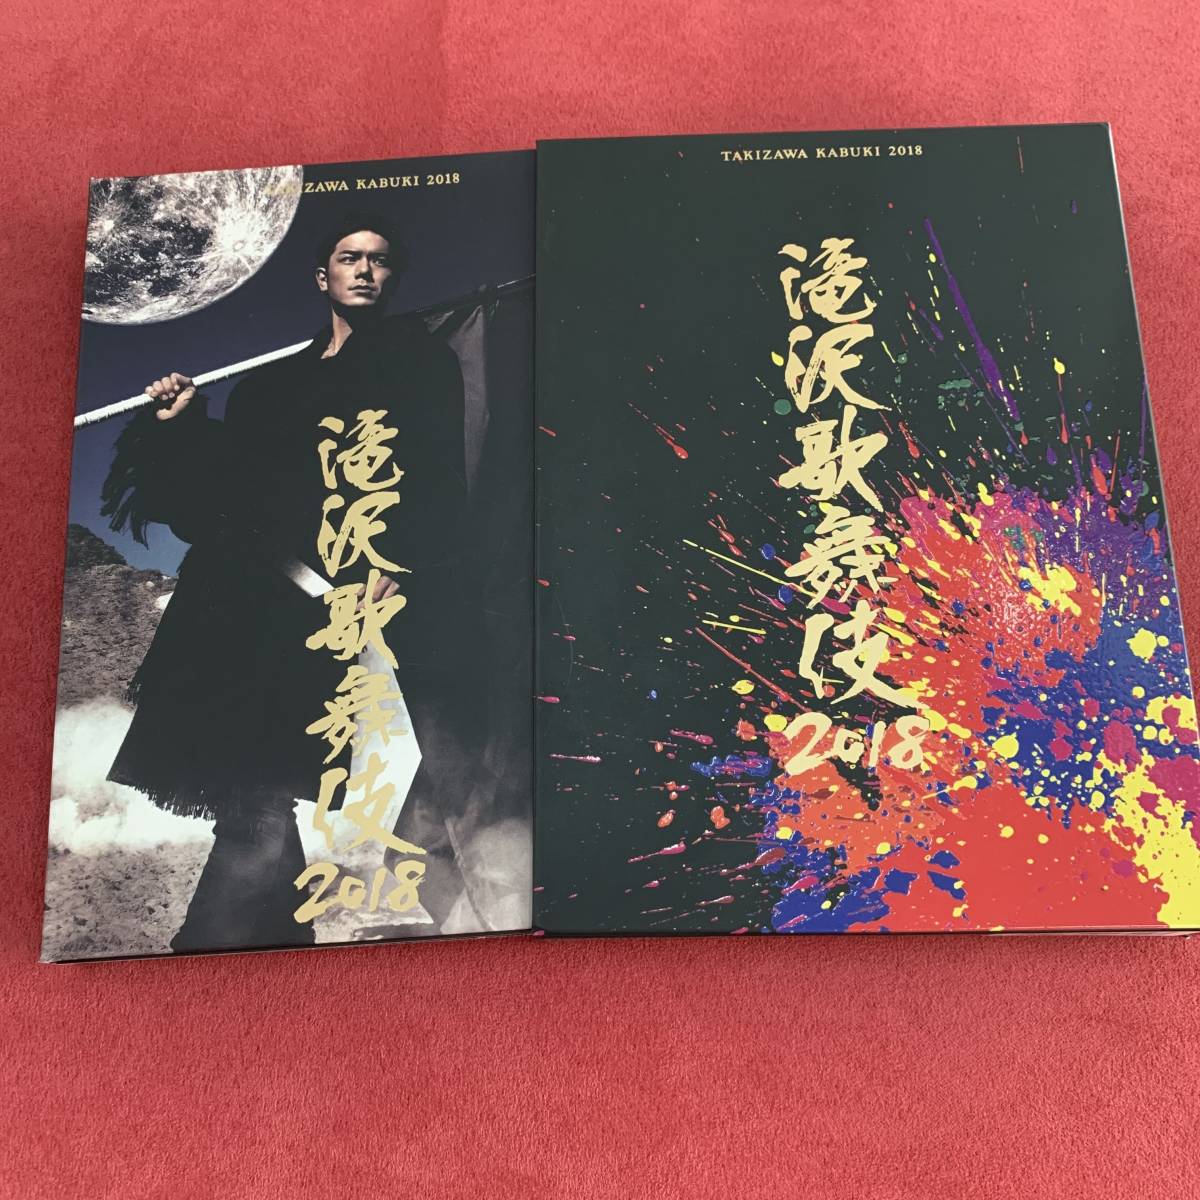 滝沢歌舞伎2018 初回盤A・3枚組 DVD(中古/送料無料)のヤフオク落札情報